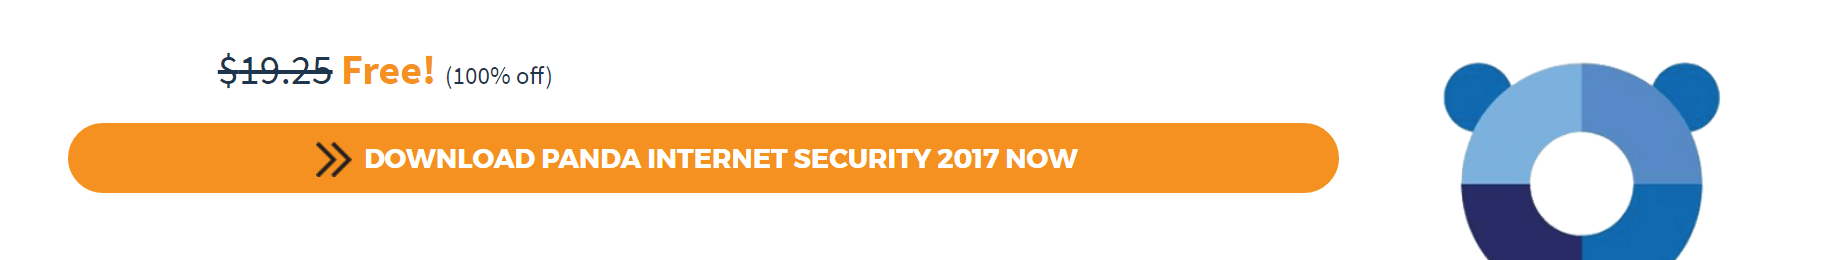 รีบด่วน! แจกของเสียเงินลิขสิทธิ์แท้ฟรี! Panda Internet Security 2017